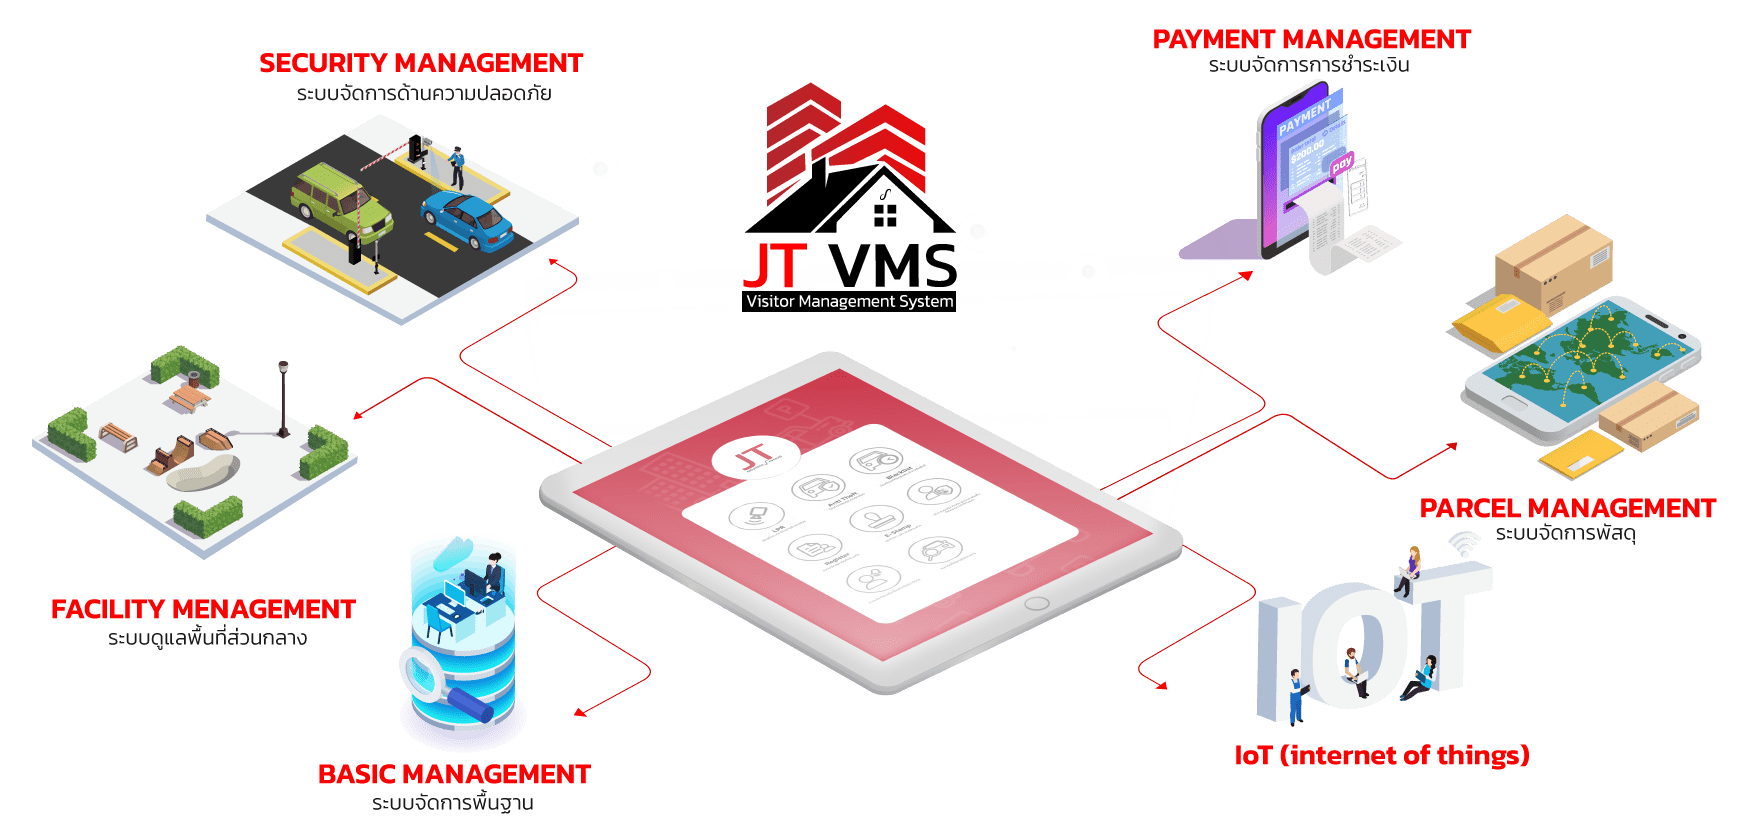 ระบบ VMS ระบบแลกบัตรผู้มาติดต่อ ( VISITOR MANAGEMENT SYSTEM )